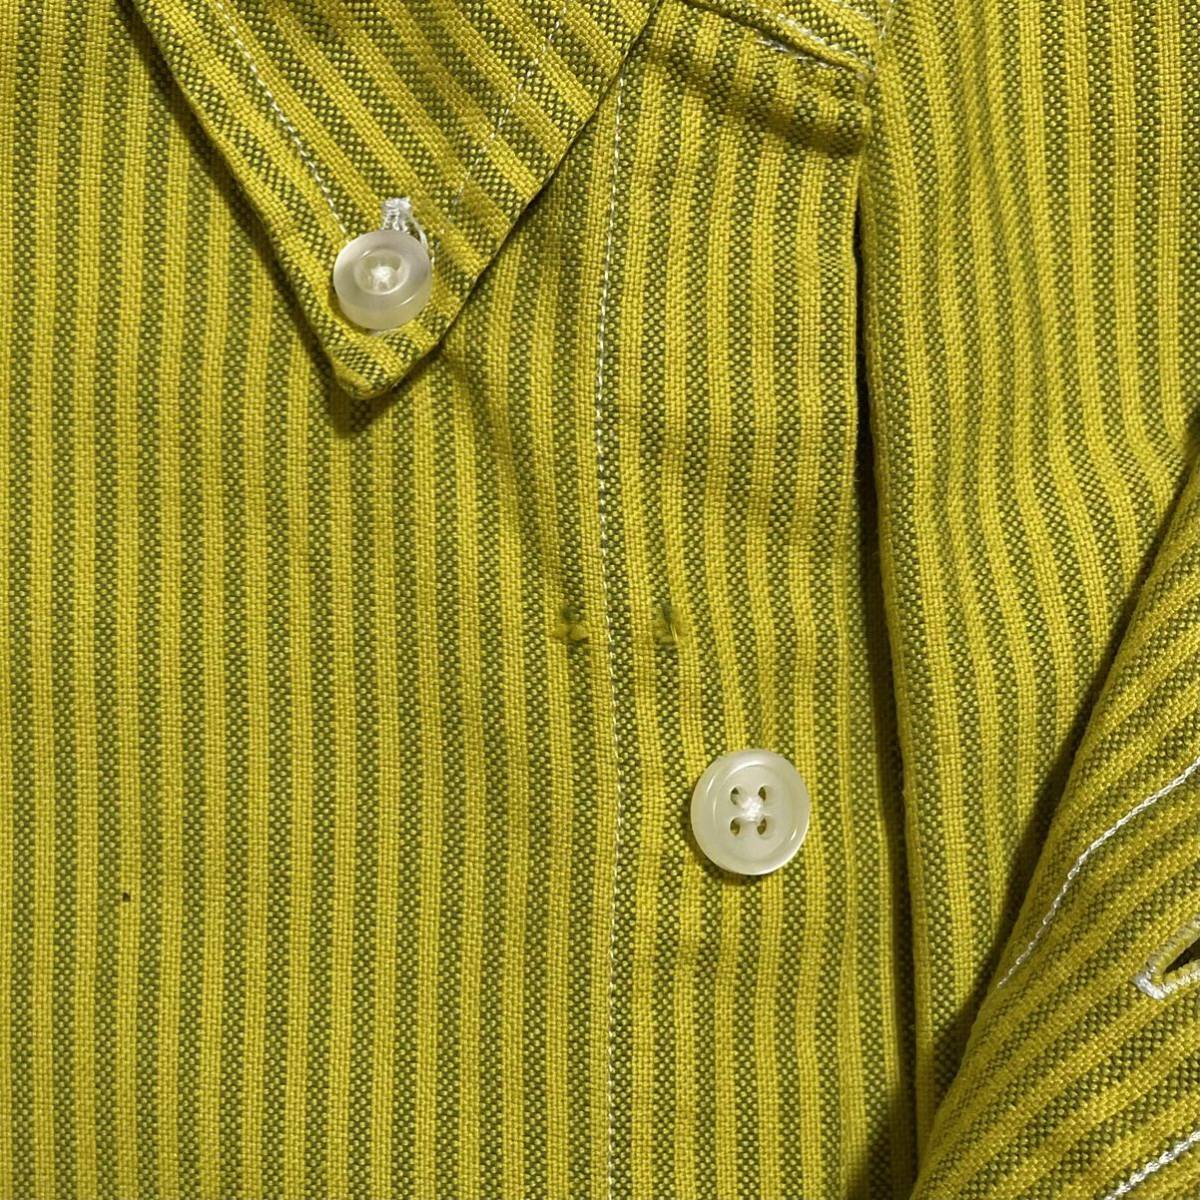 【人気ブランド】ラルフローレン Ralph Lauren 半袖 BDシャツ ビッグサイズ XLサイズ イエロー ストライプ カラーポニー 22-155